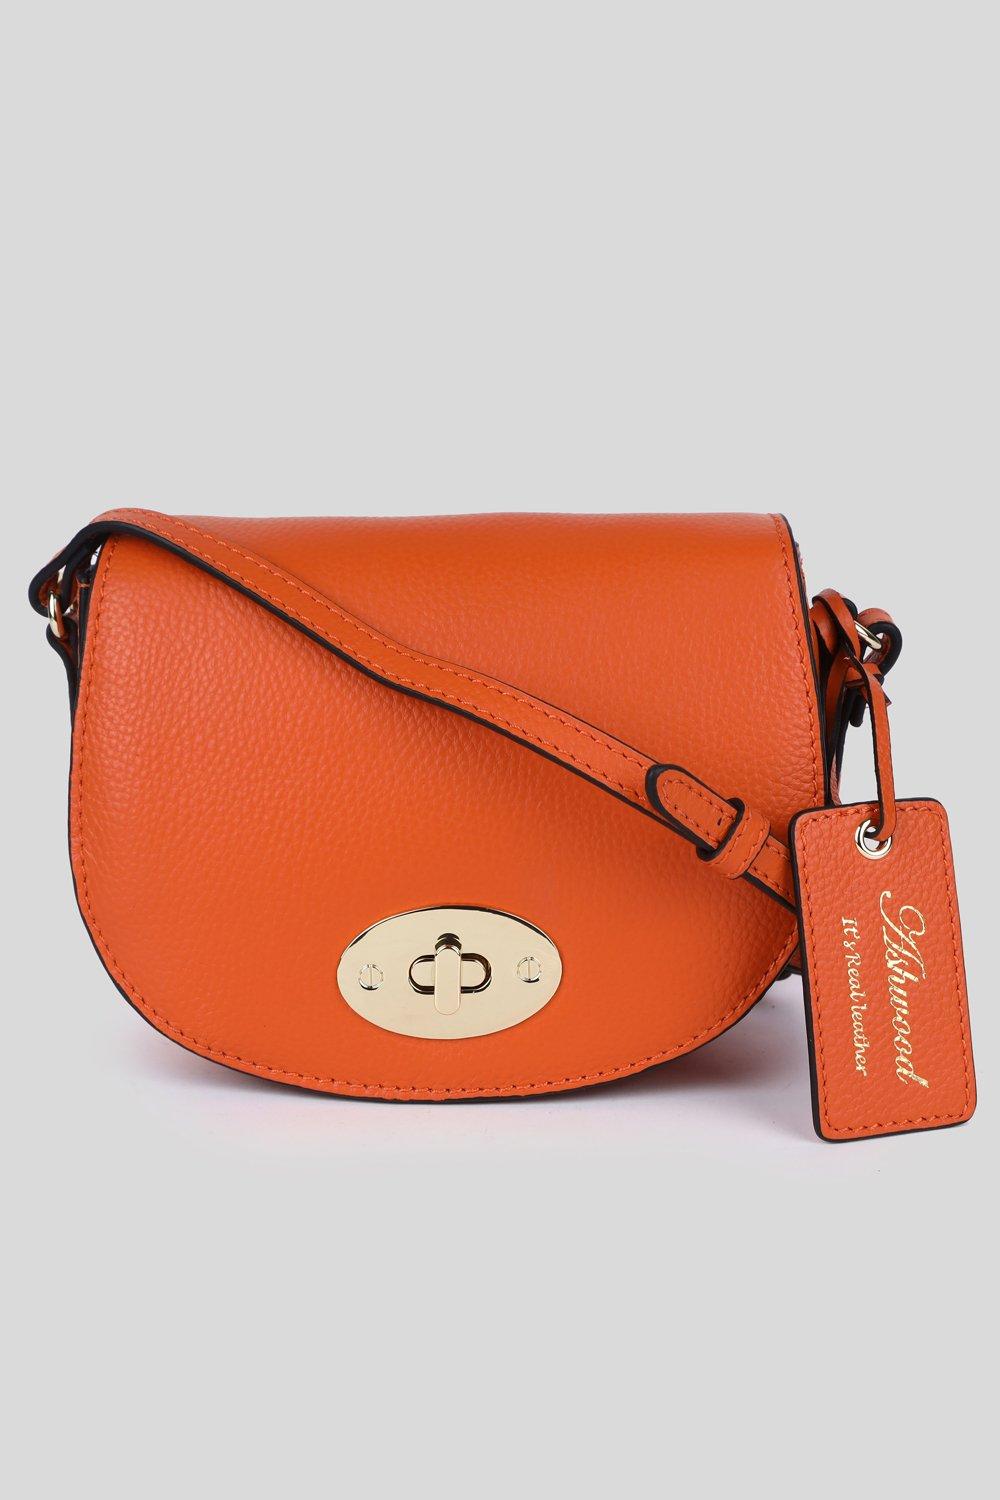 Сумка через плечо Saddle из натуральной кожи 'Borsa della Moda' Ashwood Leather, оранжевый